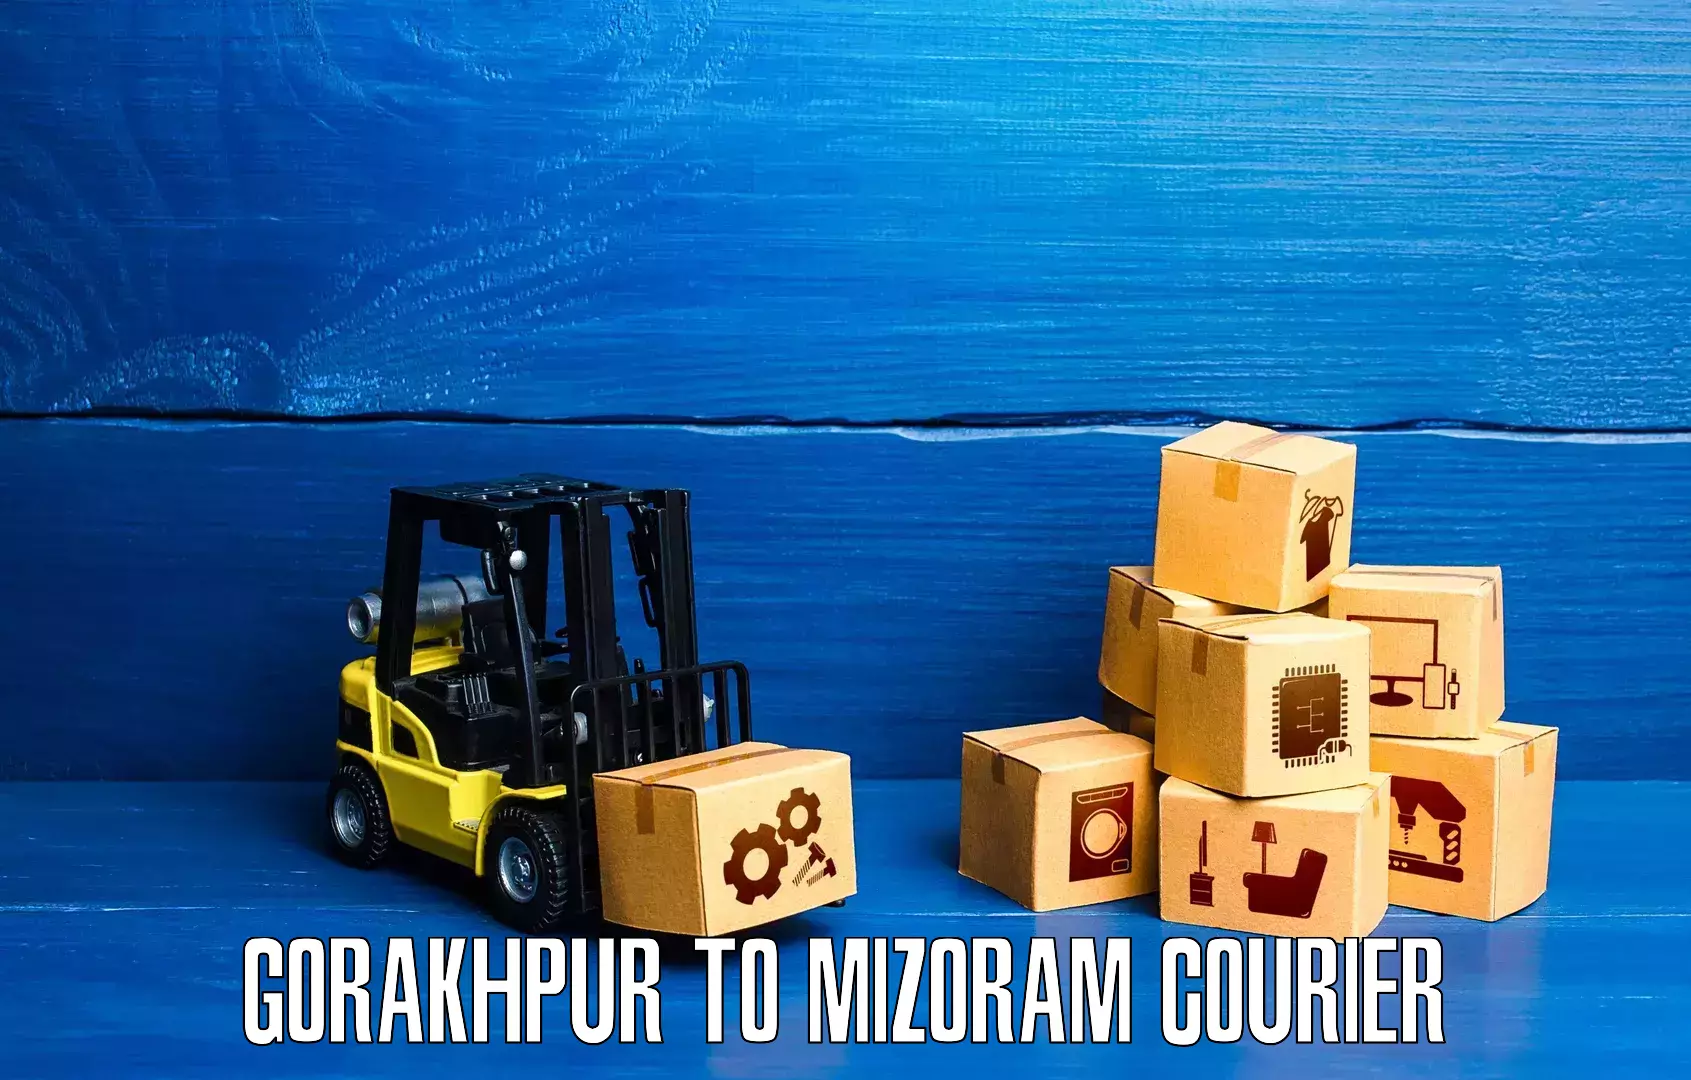 Urban courier service Gorakhpur to Hnahthial